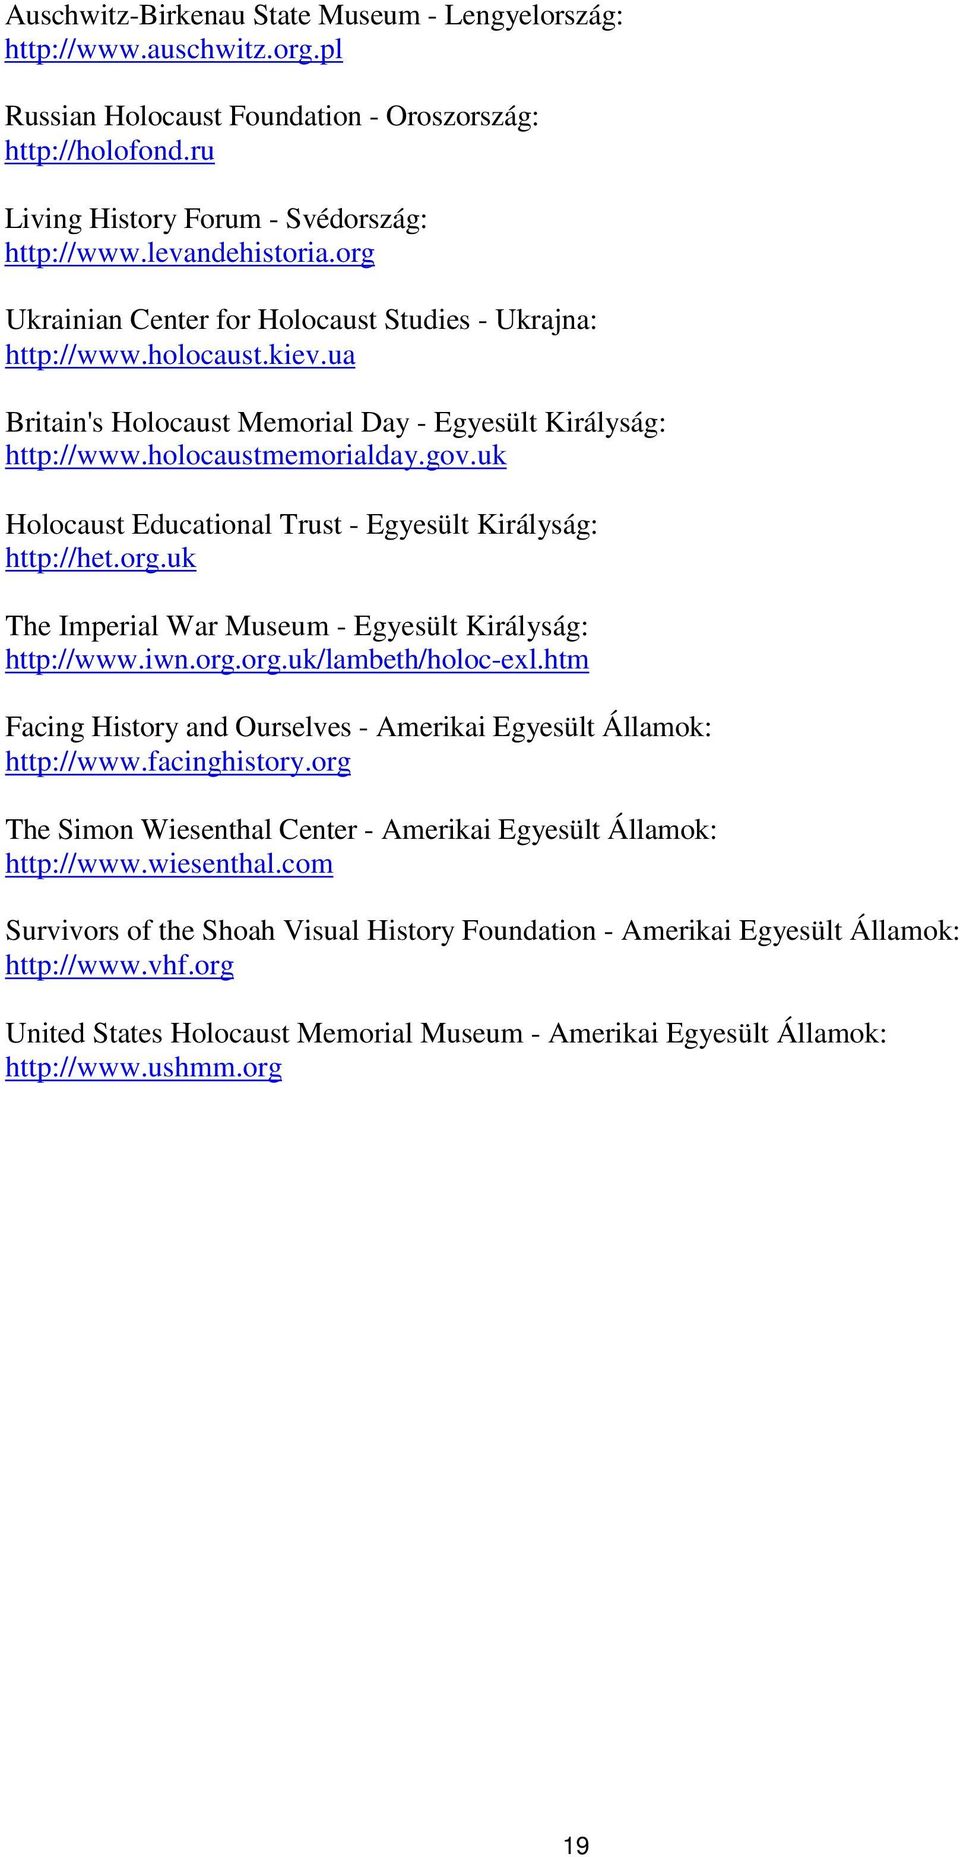 uk Holocaust Educational Trust - Egyesült Királyság: http://het.org.uk The Imperial War Museum - Egyesült Királyság: http://www.iwn.org.org.uk/lambeth/holoc-exl.